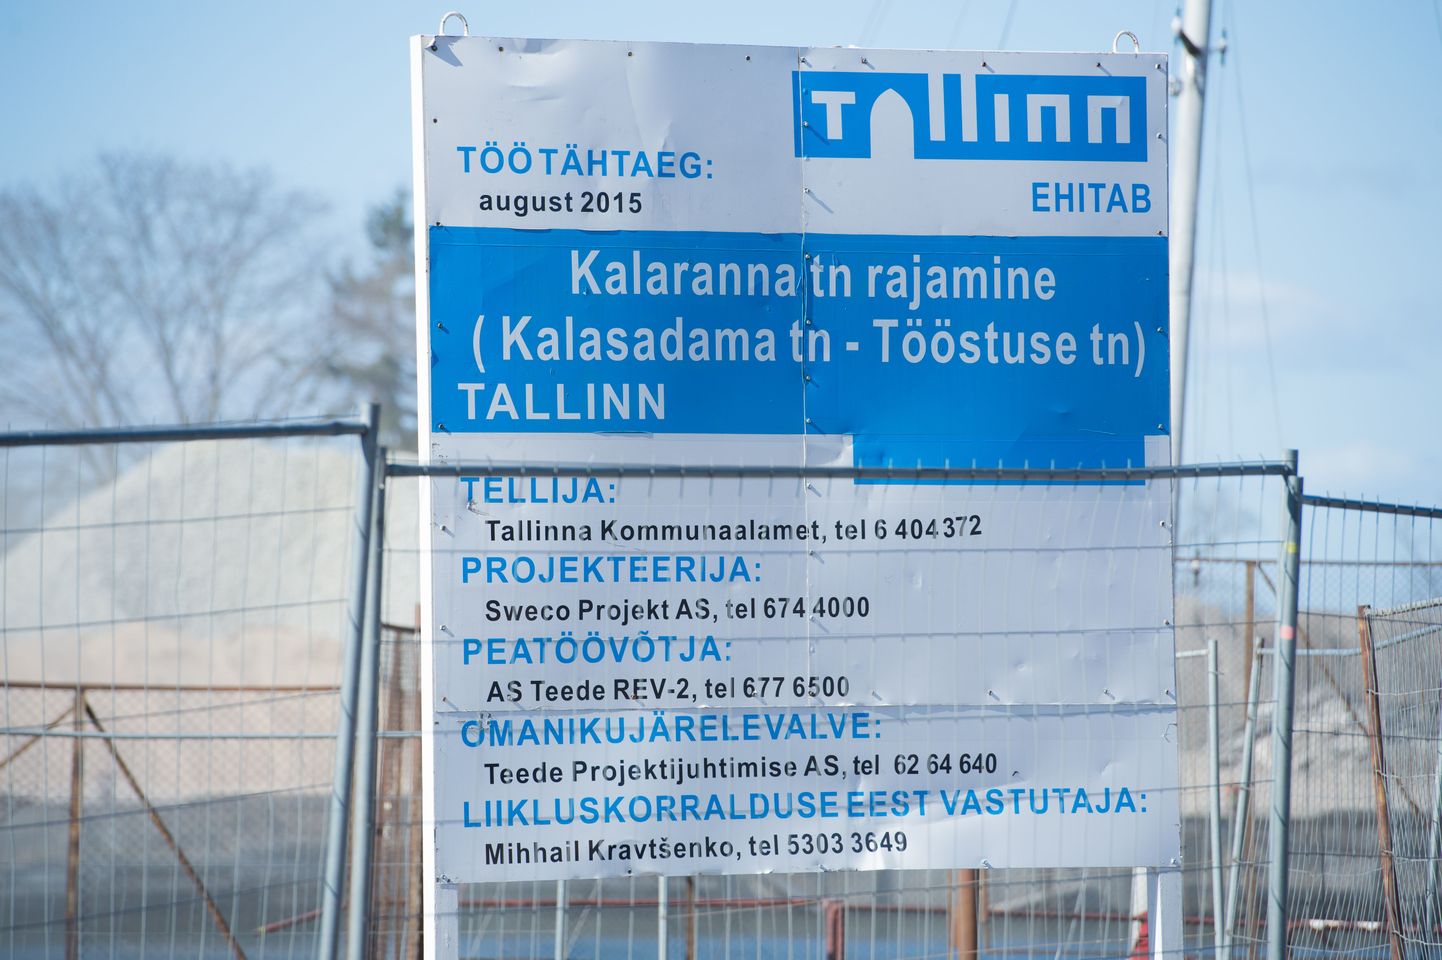 Tallinn ehitab, aga jääb tähtaegadega hätta. Kalaranna tänava ehituse llõpp ähvardab septembrisse nihkuda.